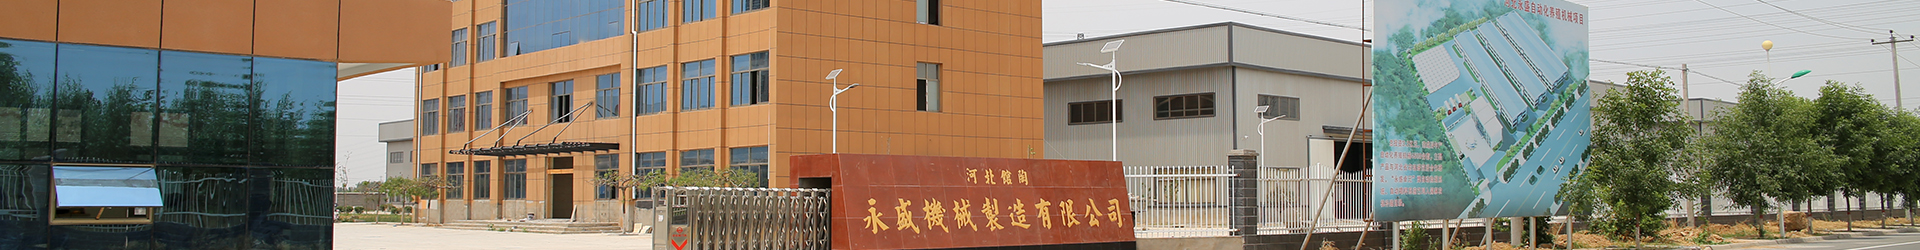 2010年济南展会-馆陶县永盛机械制造有限公司